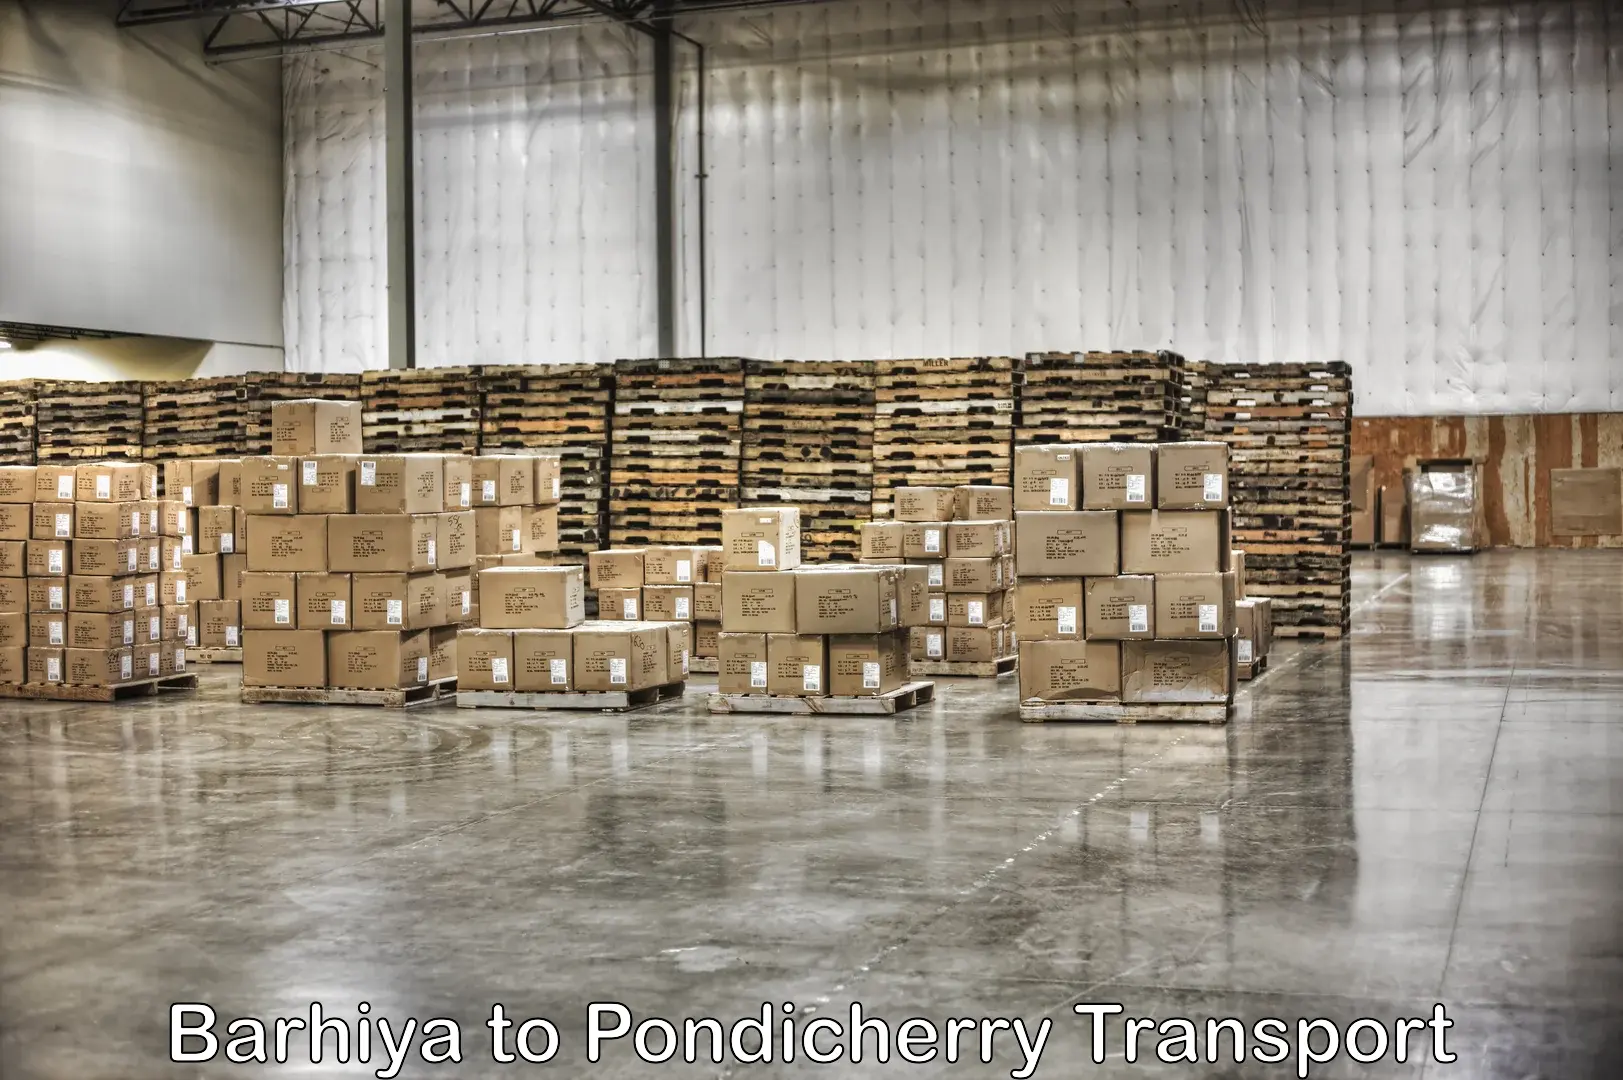 Commercial transport service Barhiya to Pondicherry